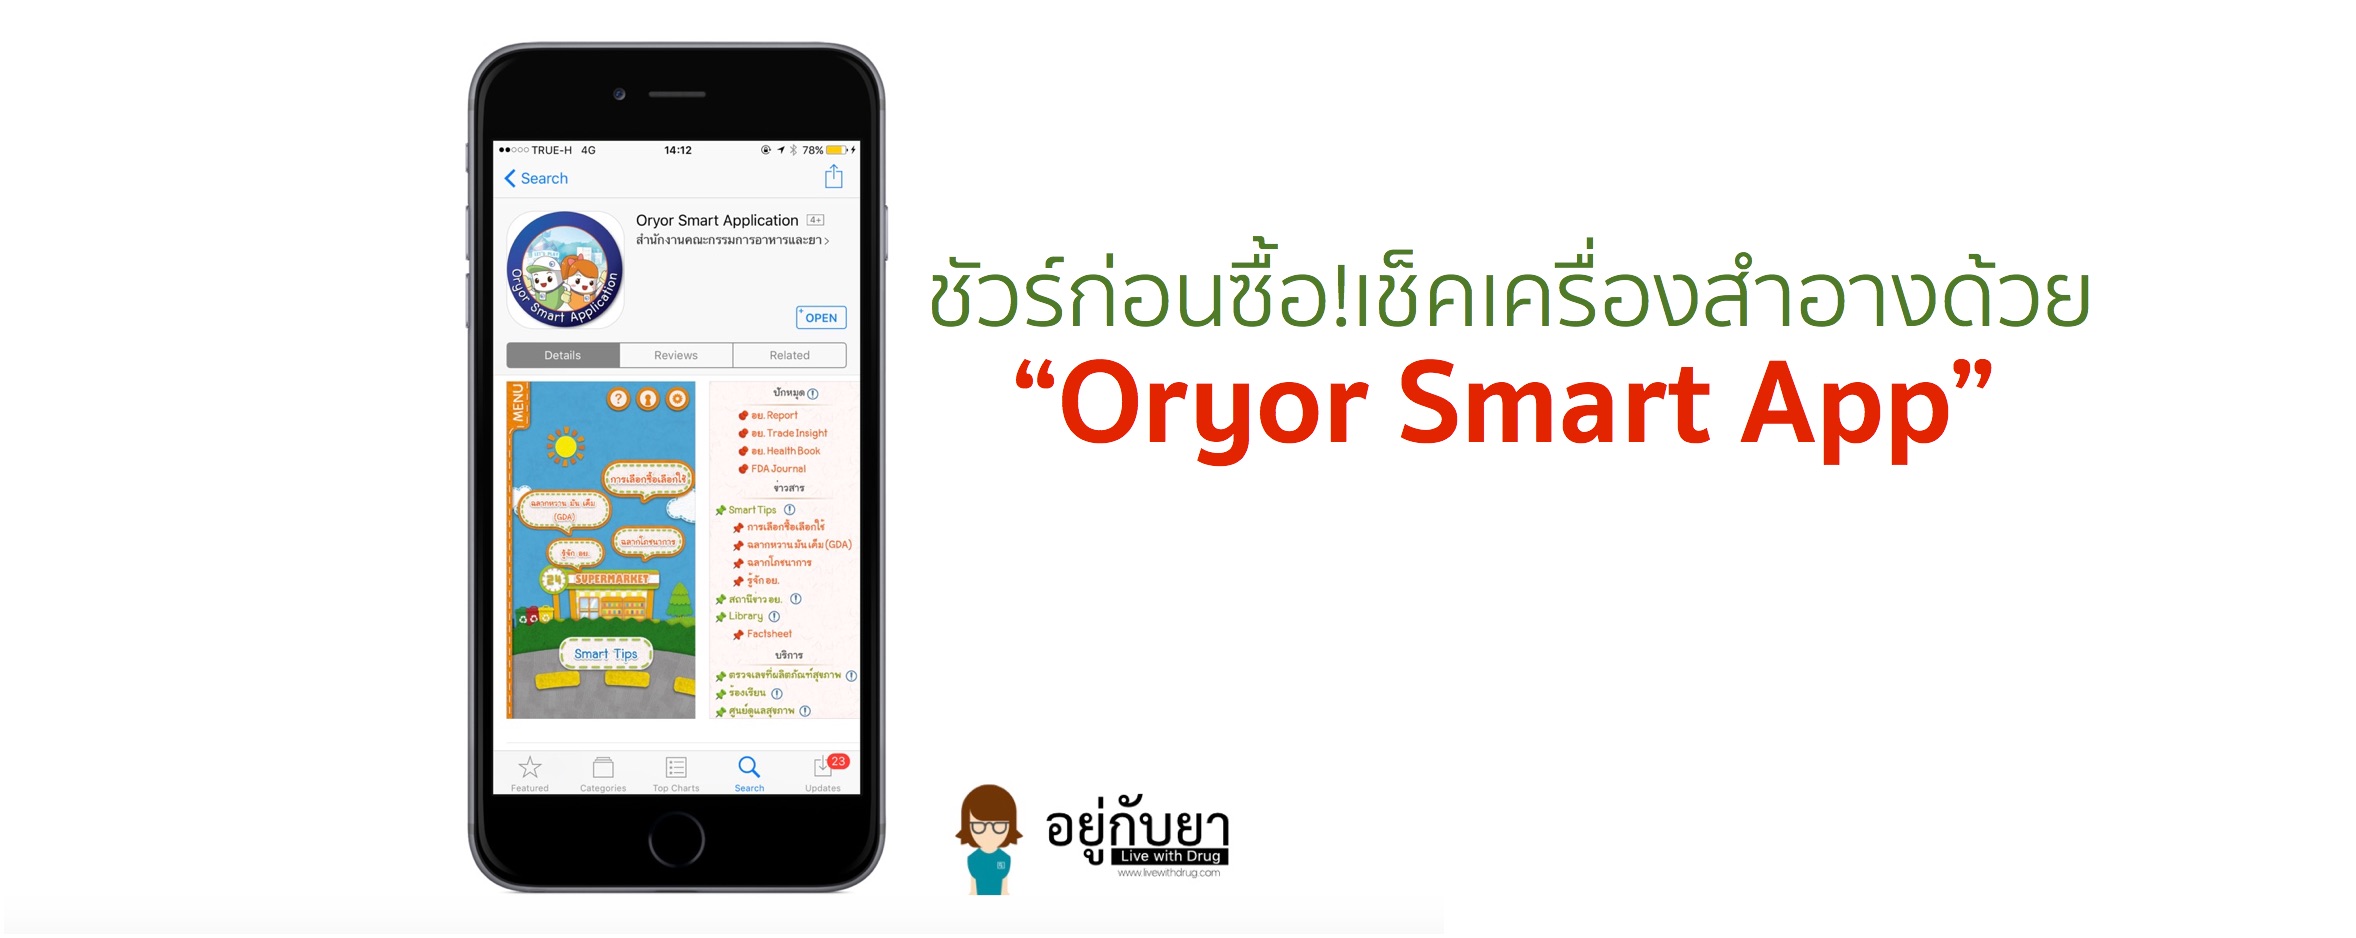 Oryor Smart App